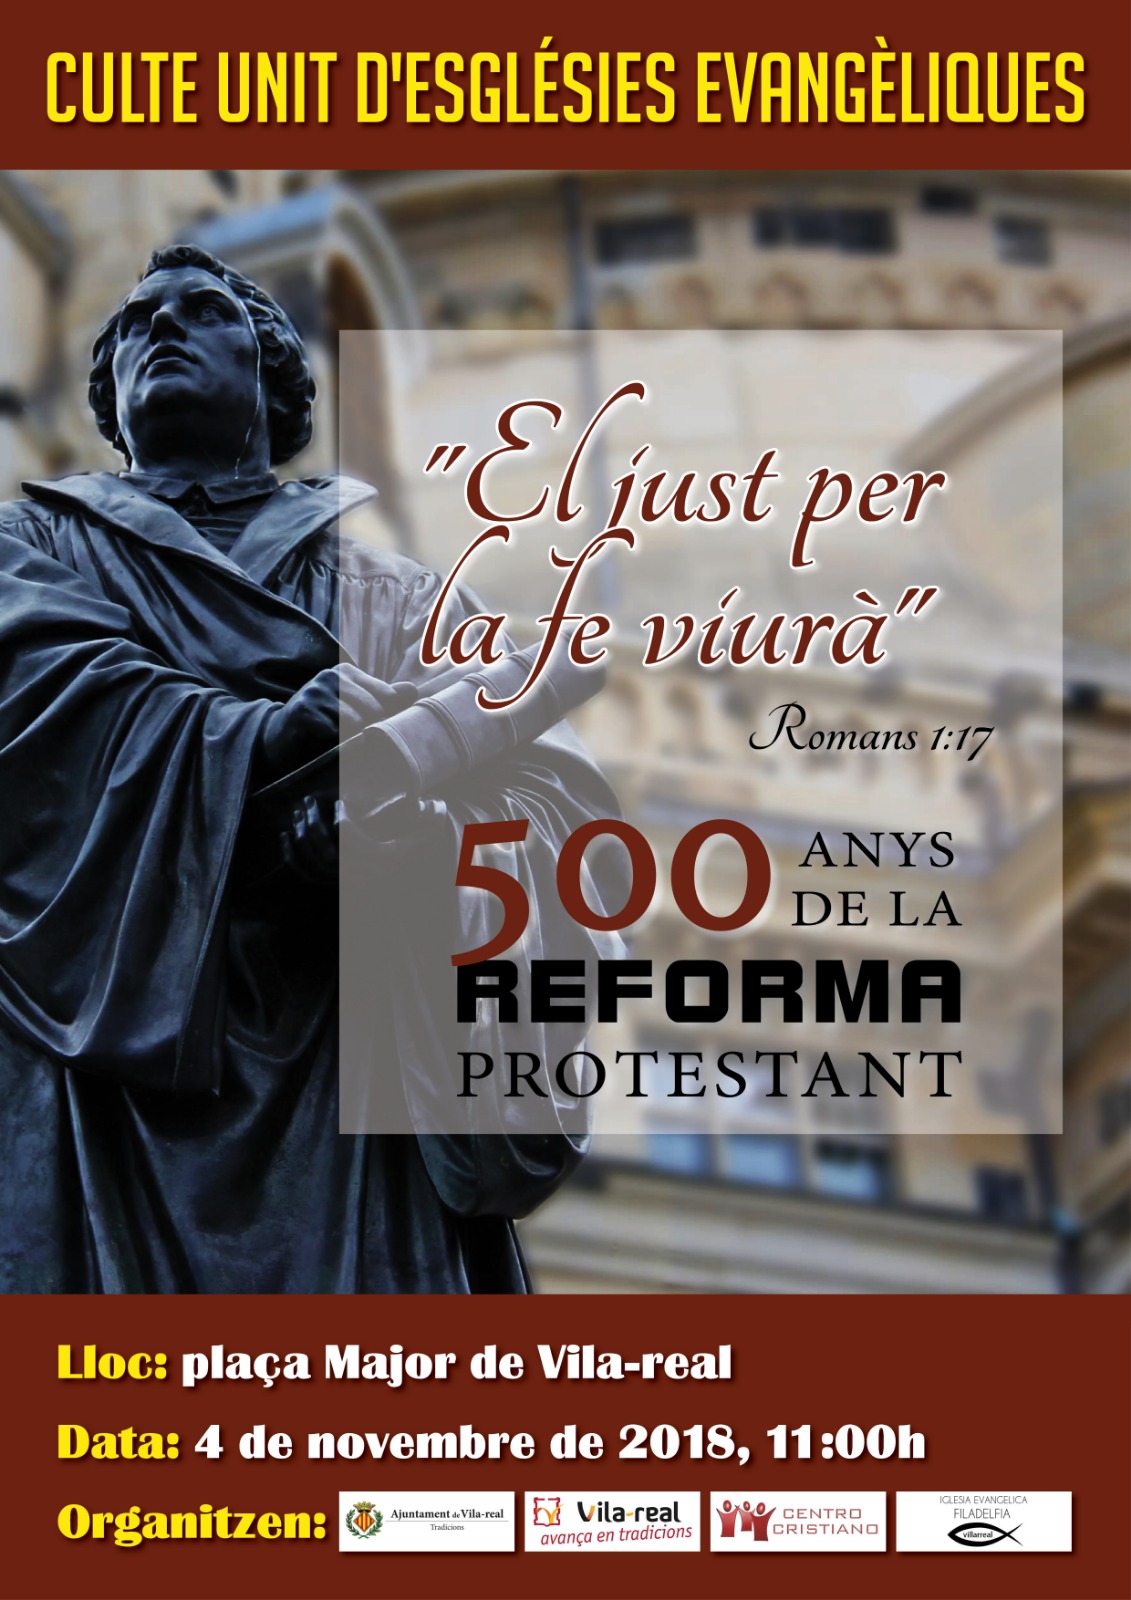 "El just per la fe viur" - 500 aos de la reforma protestante